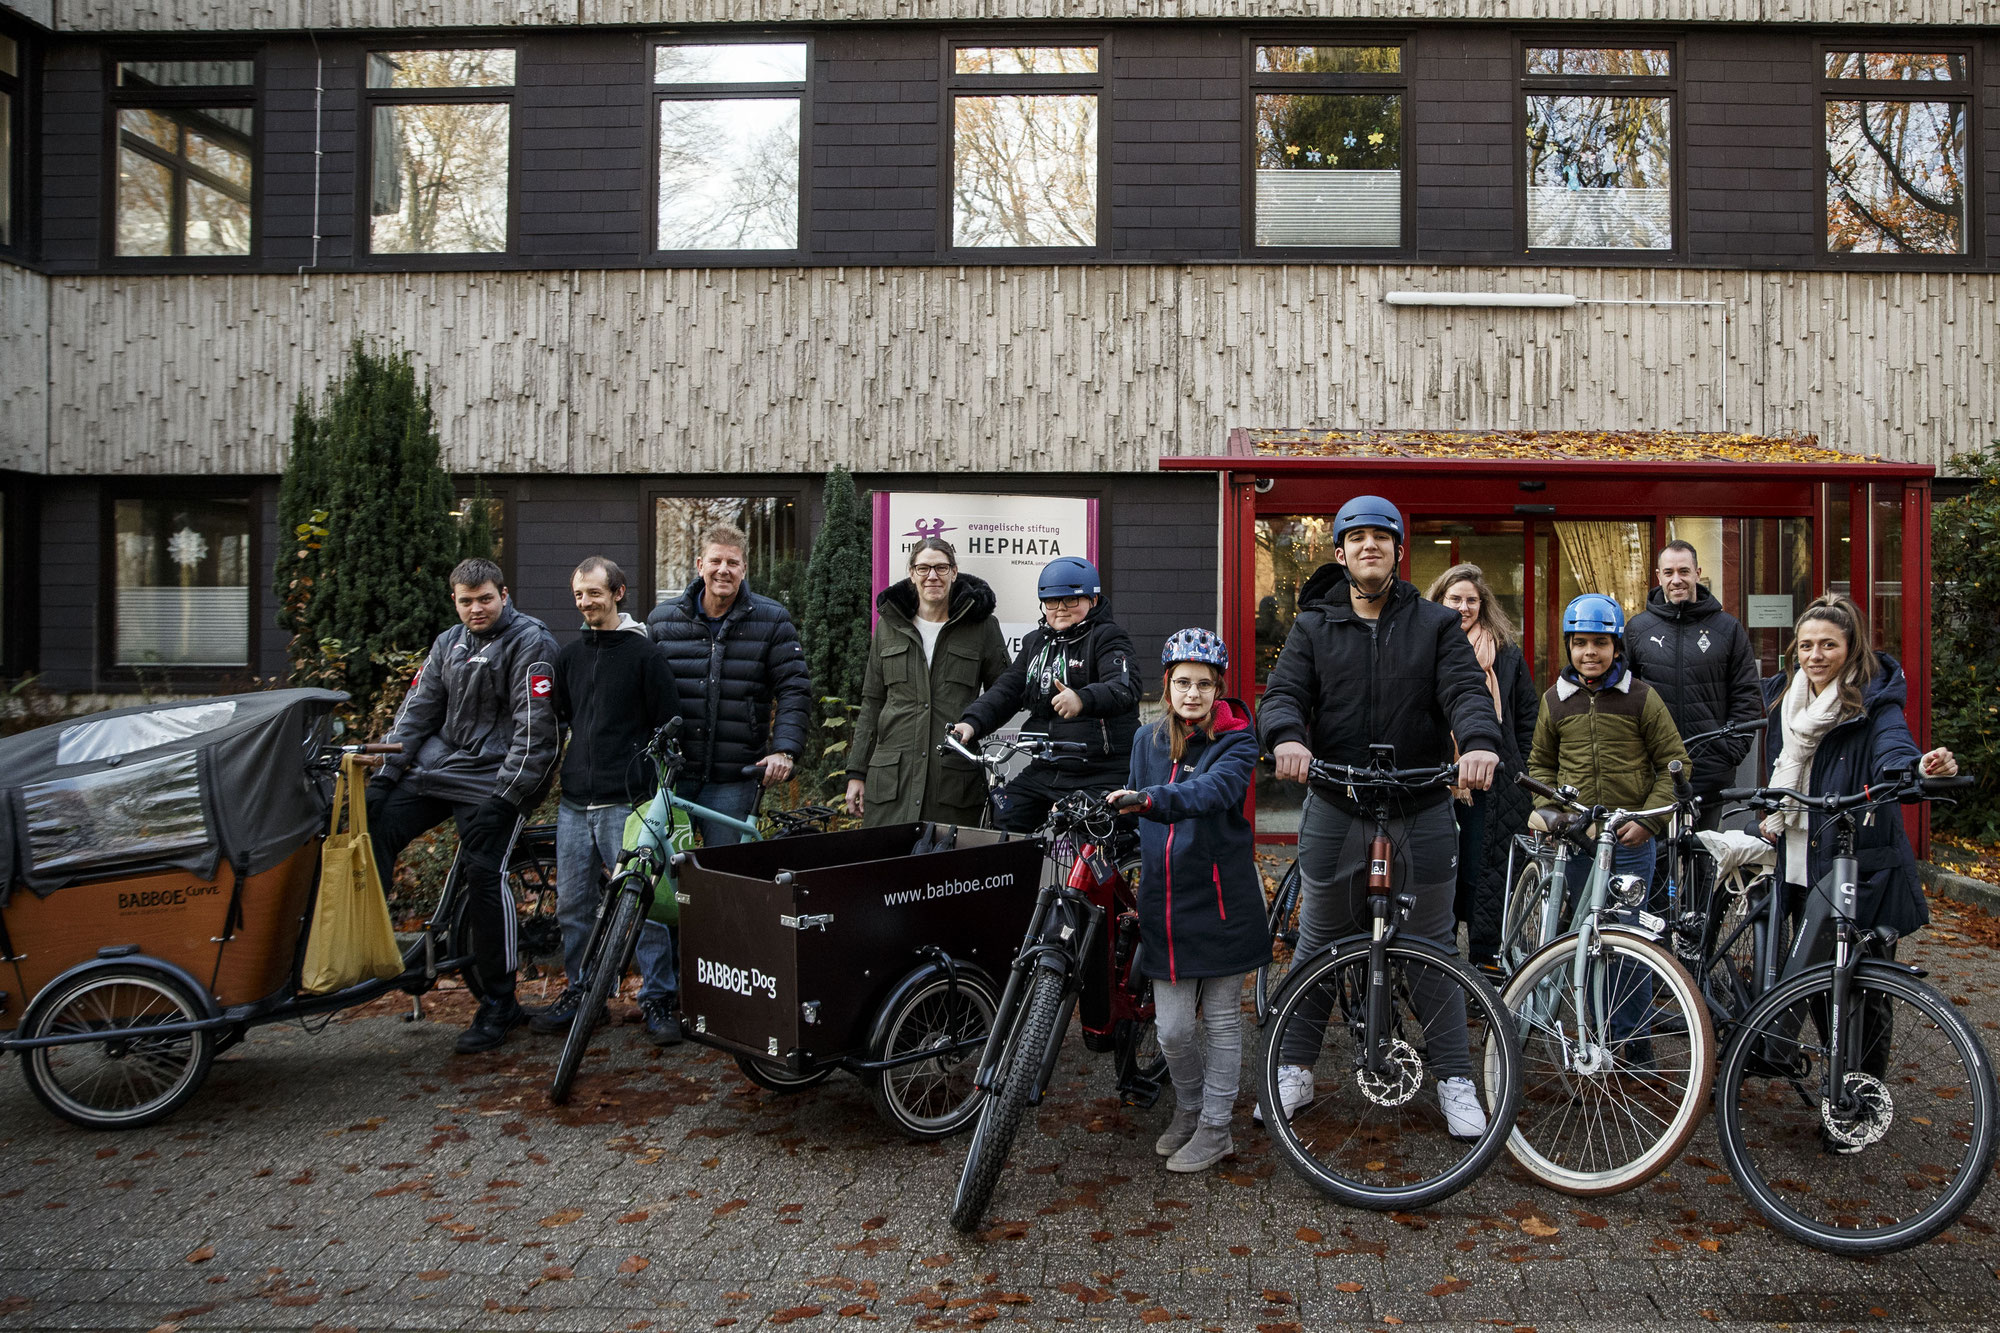 Lease a Bike und Borussia Mönchengladbach spenden Fahrräder an Hephata-Stiftung